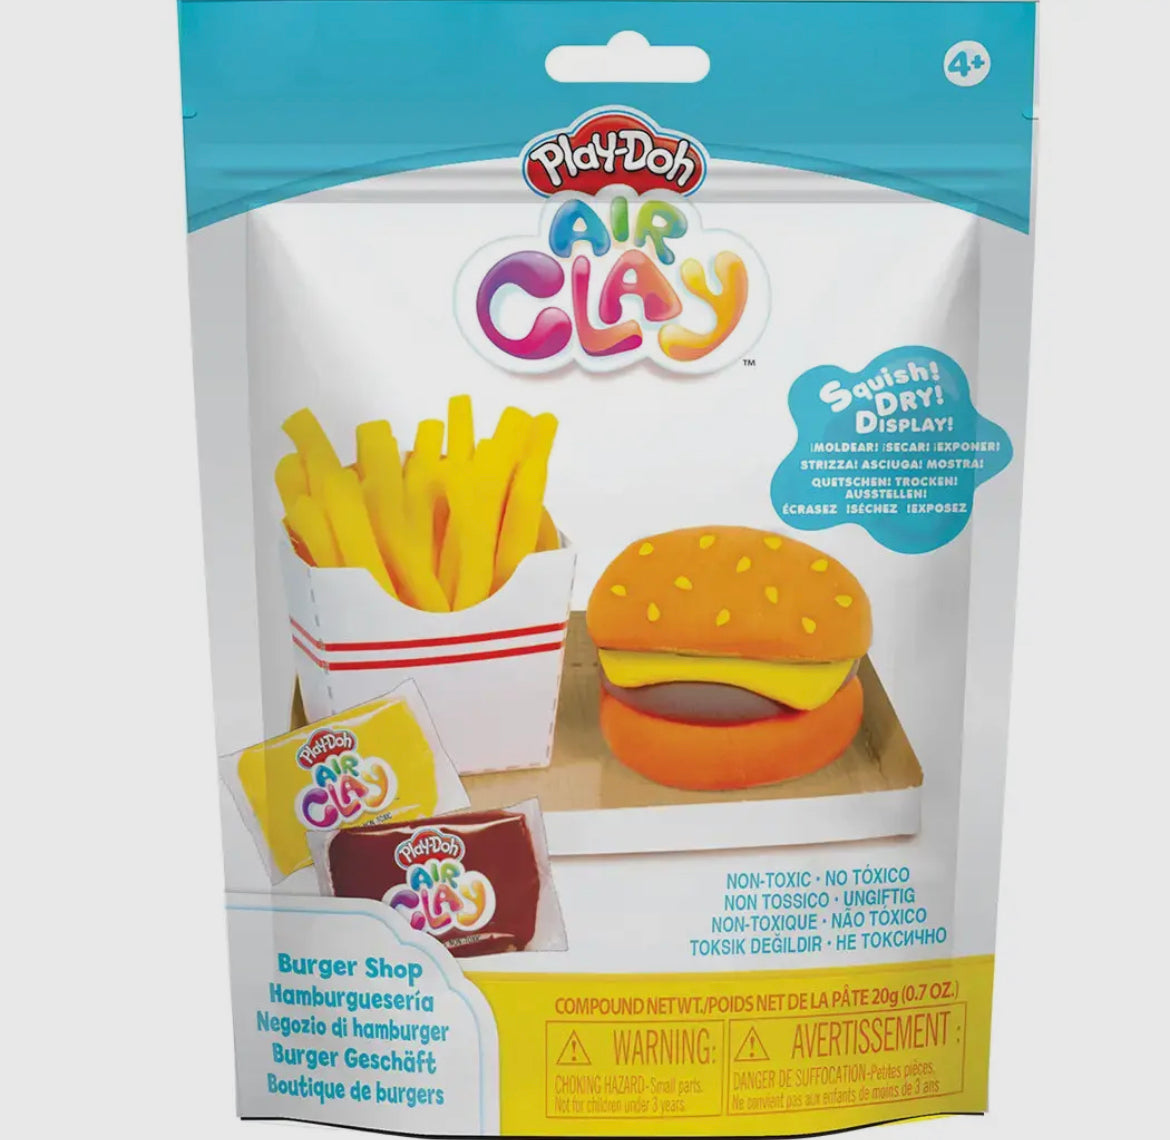 Play-Doh Air Clay